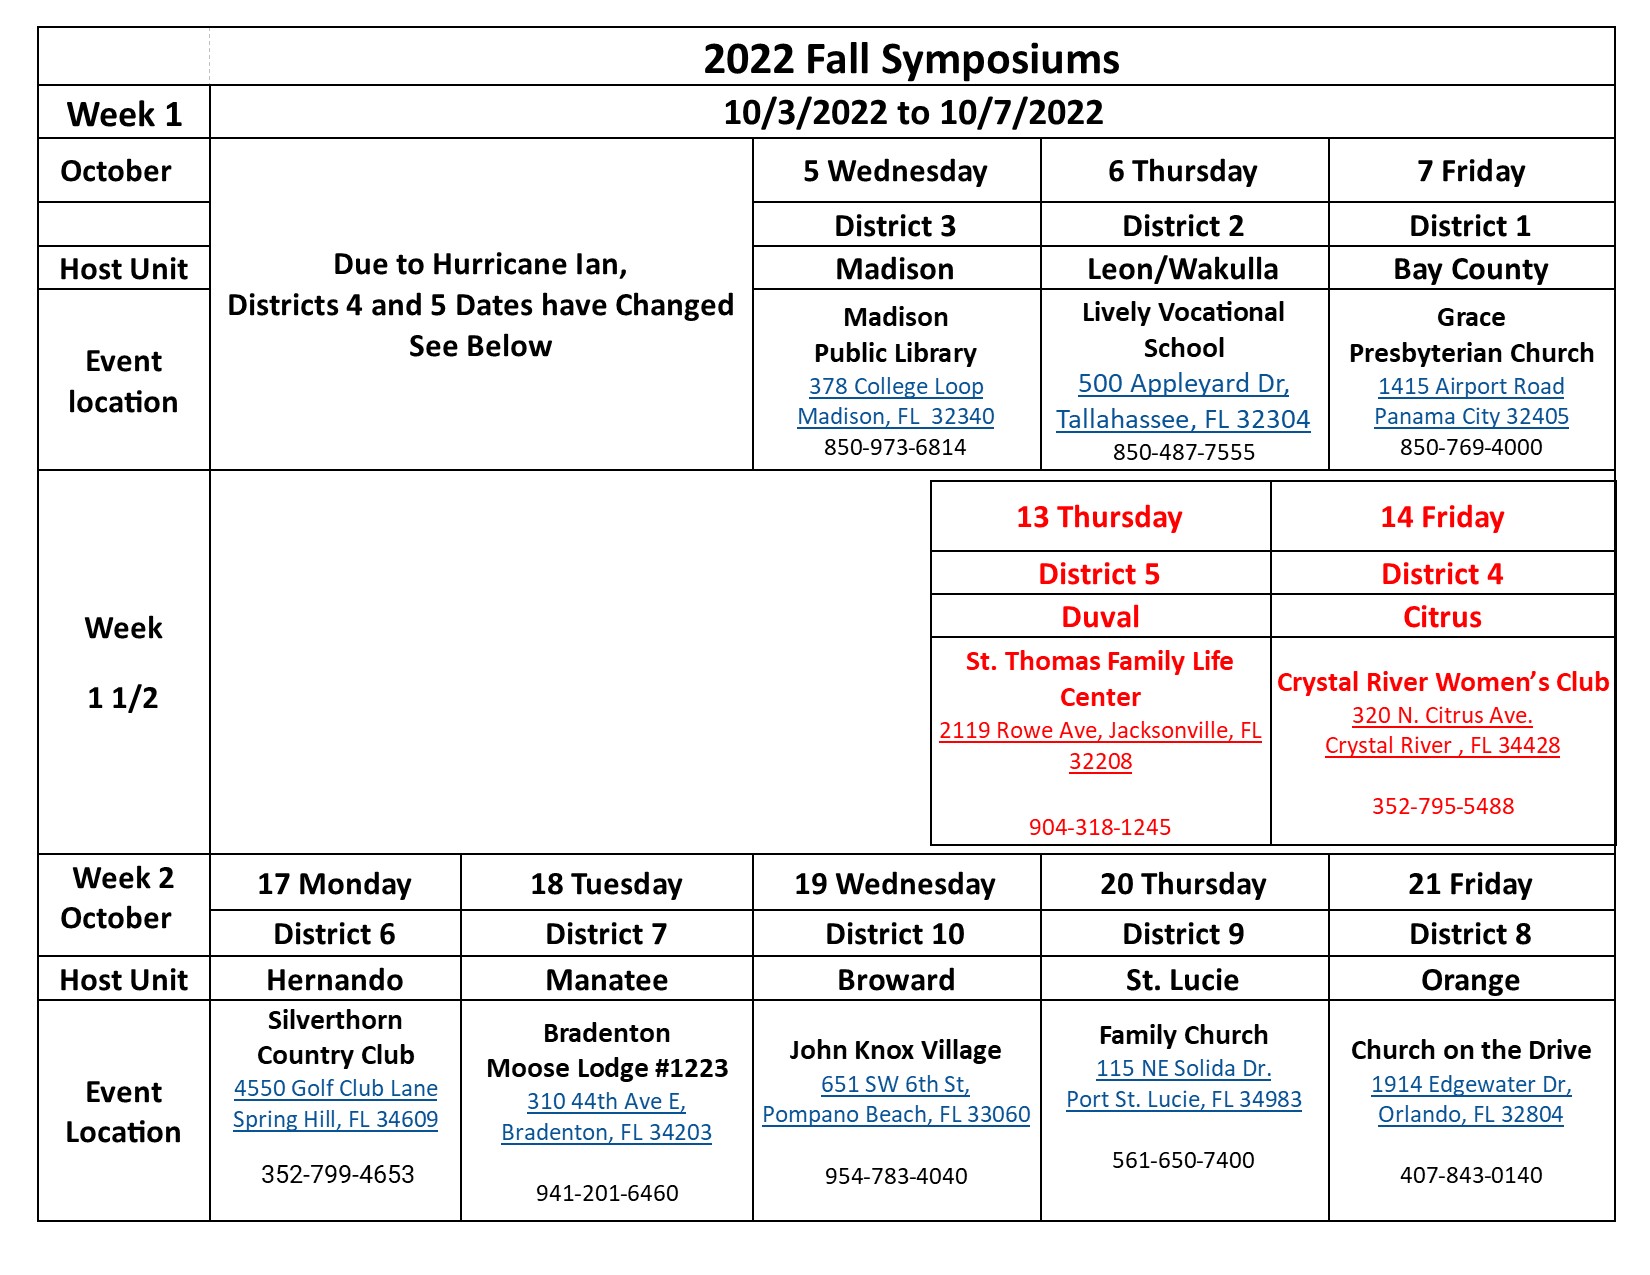 Symposium 2022 Calendar- Ian Revised September 30